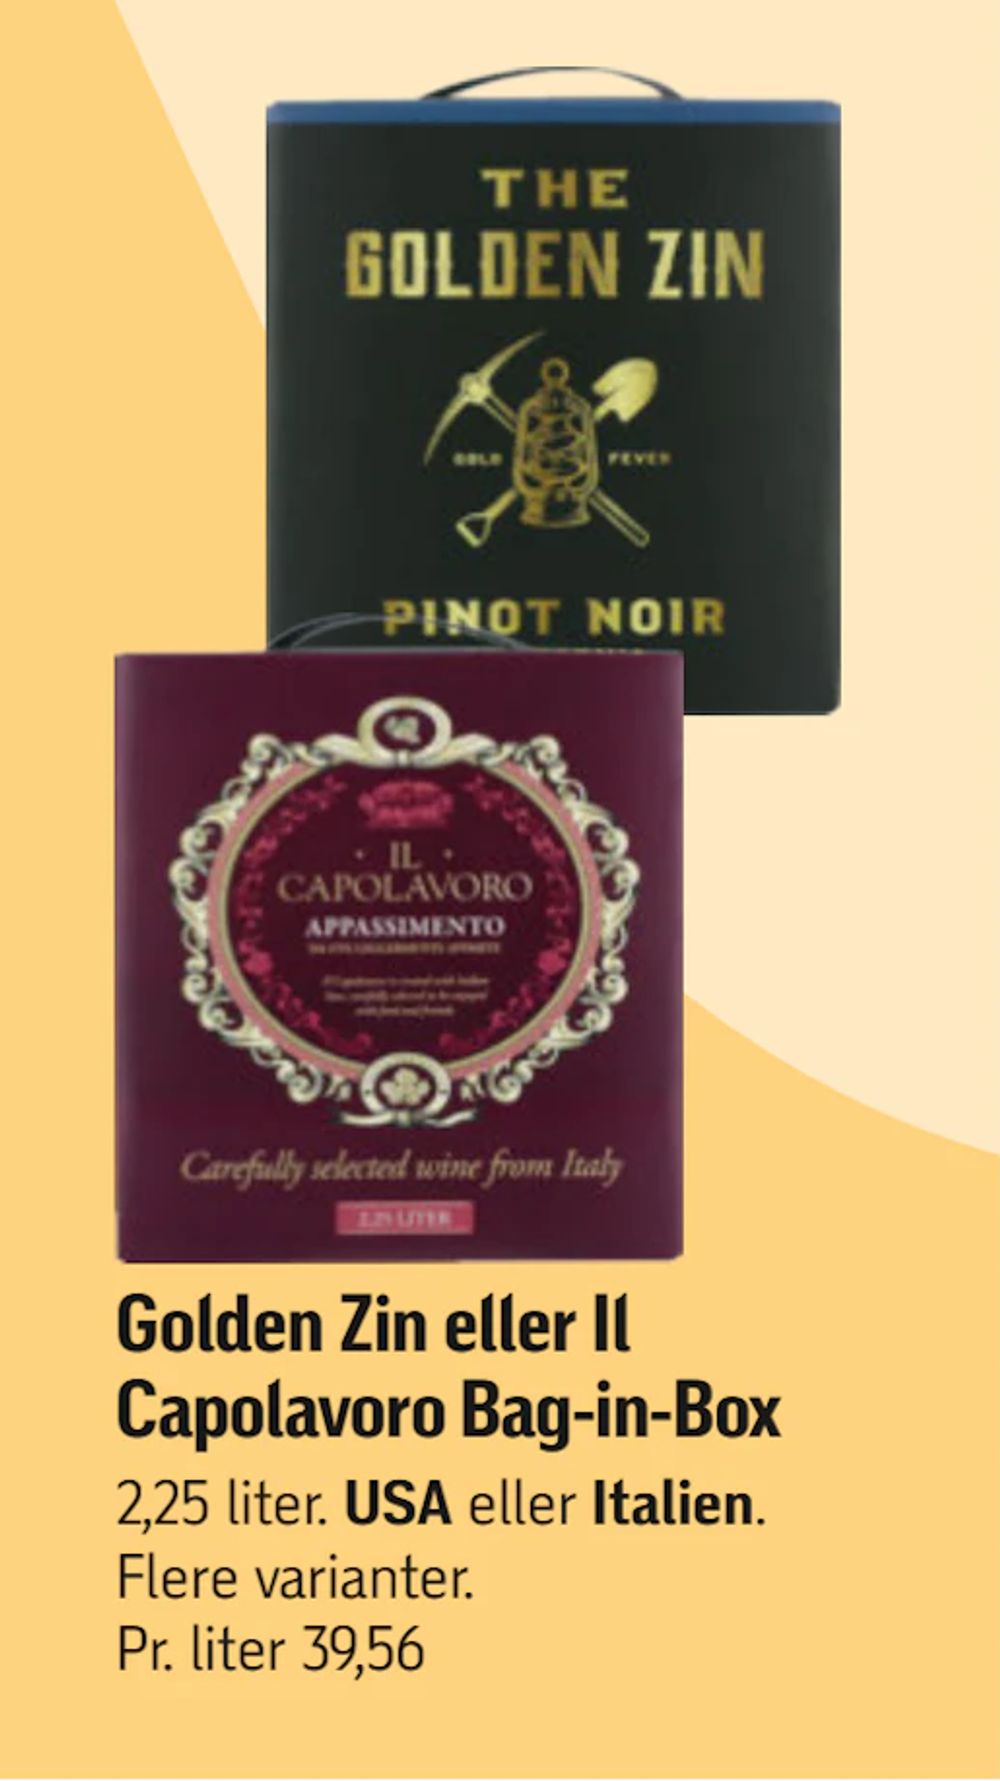 Tilbud på Golden Zin eller Il Capolavoro Bag-in-Box fra føtex til 89 kr.